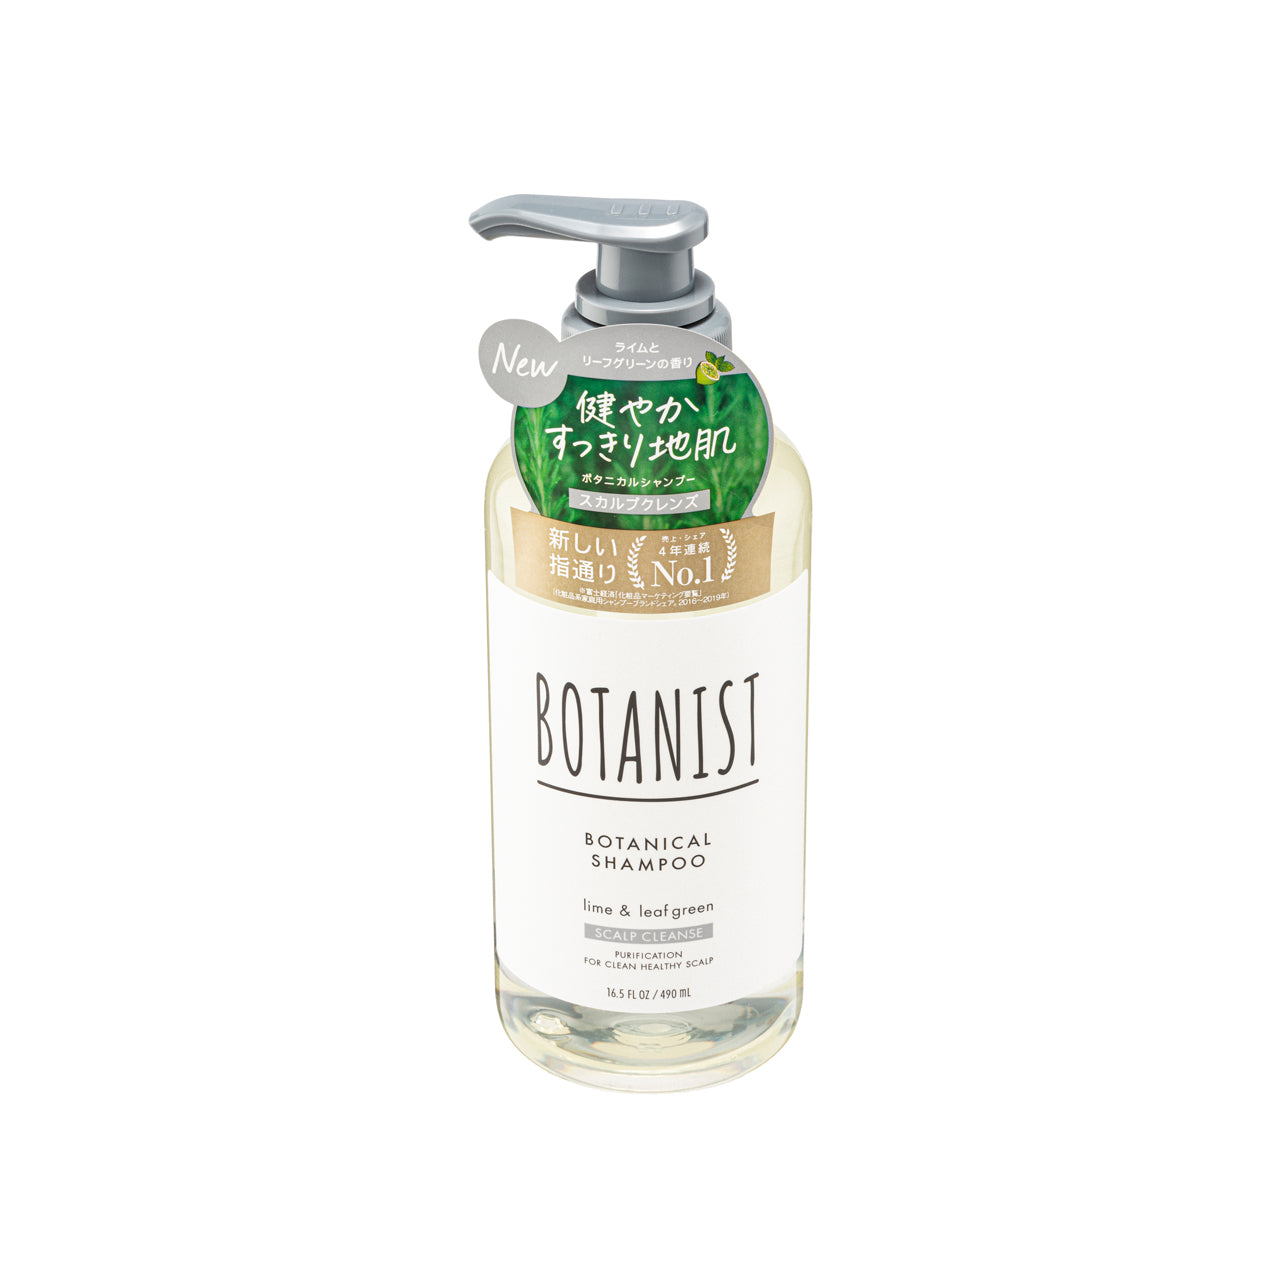 Botanist Scalp Cleanse Botanical Shampoo  Lime and Leaf Green  490ml